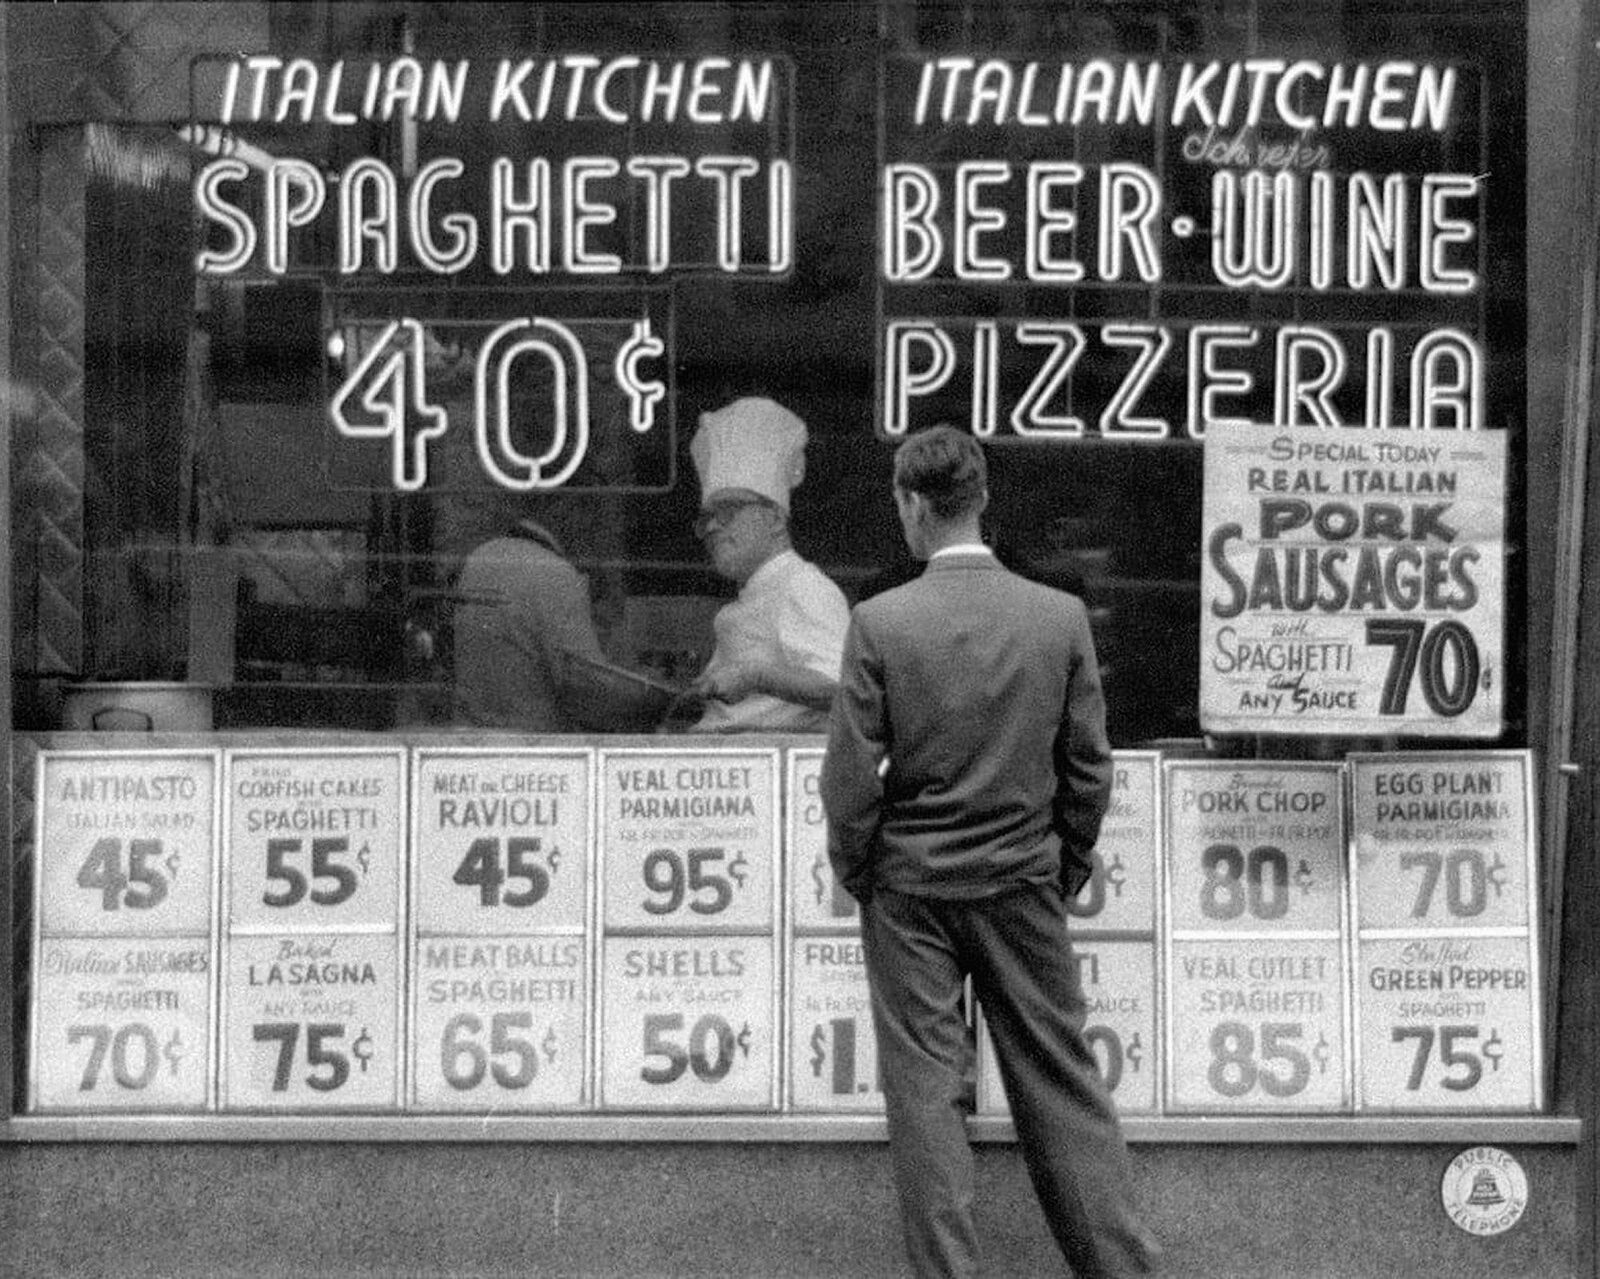  1956 HELL'S KITCHEN Italian Kitcken Restaurant PHOTO  (211-K)